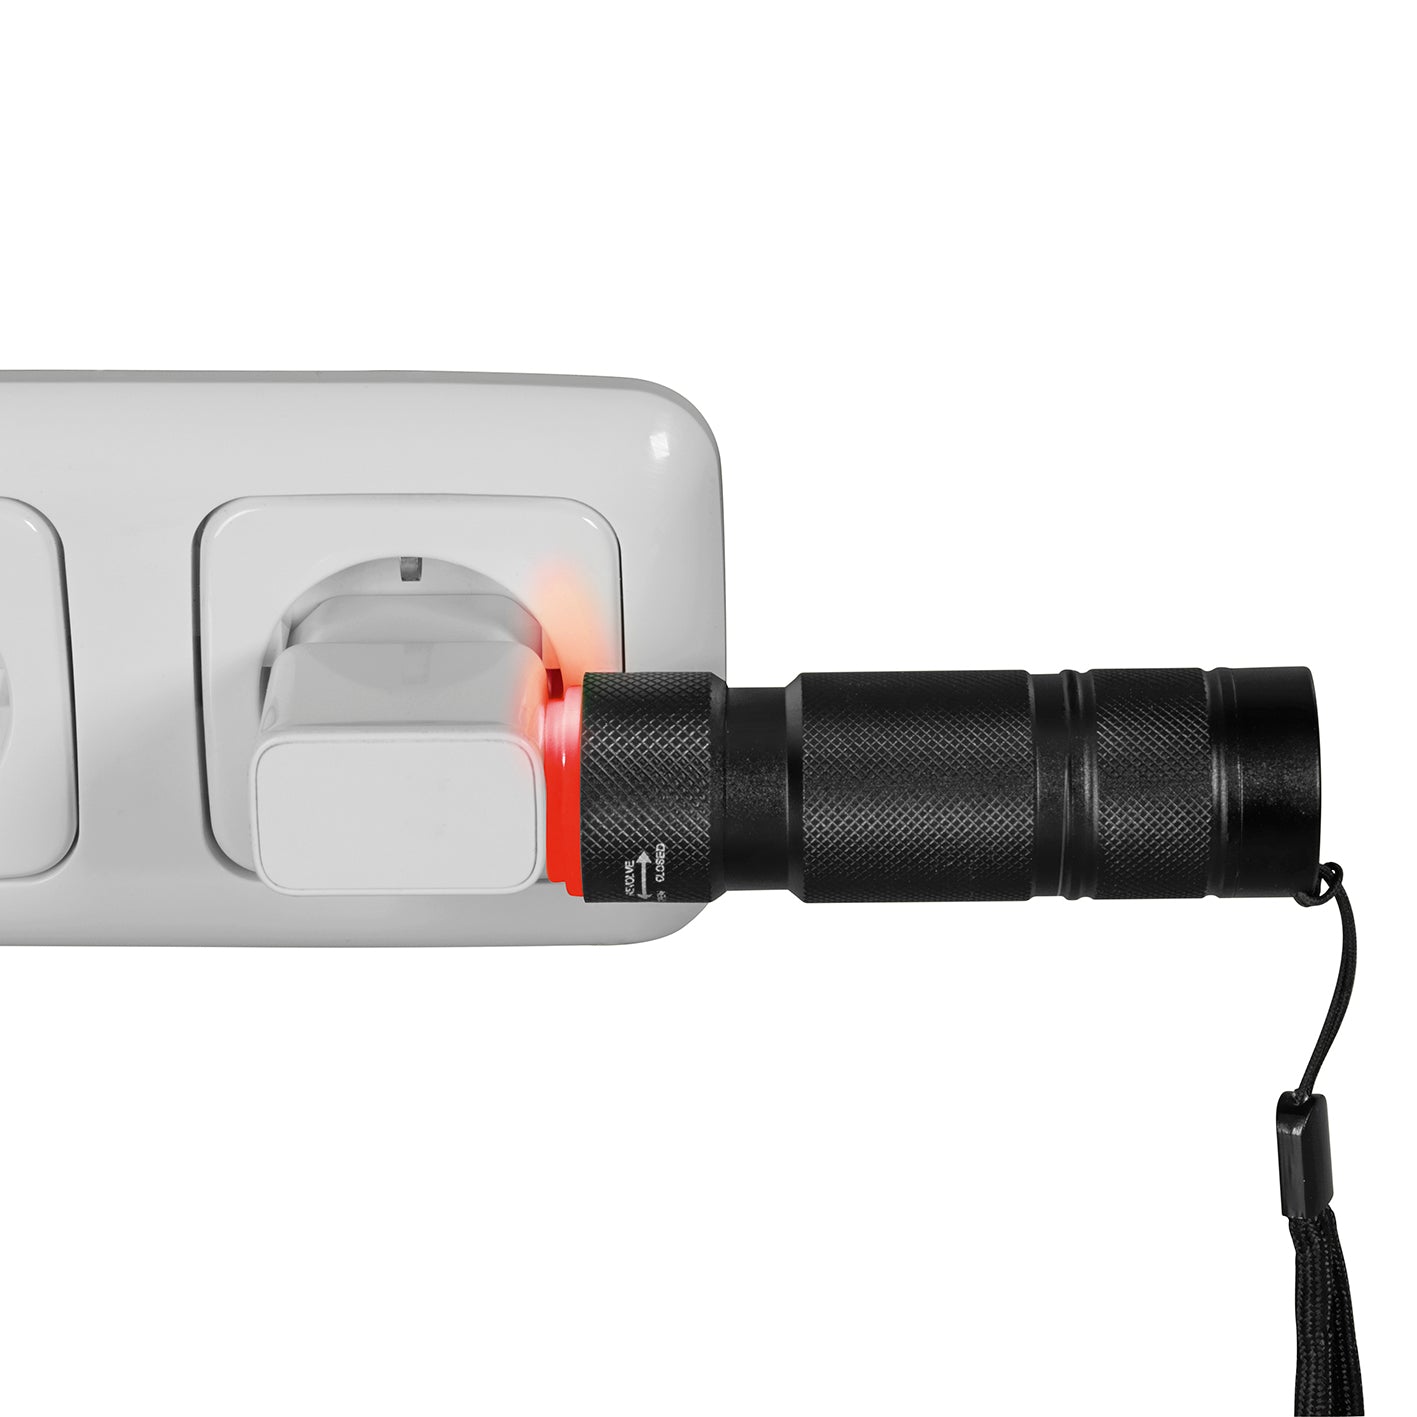 Power-Taschenlampe 3,7 V - 1800 mAh